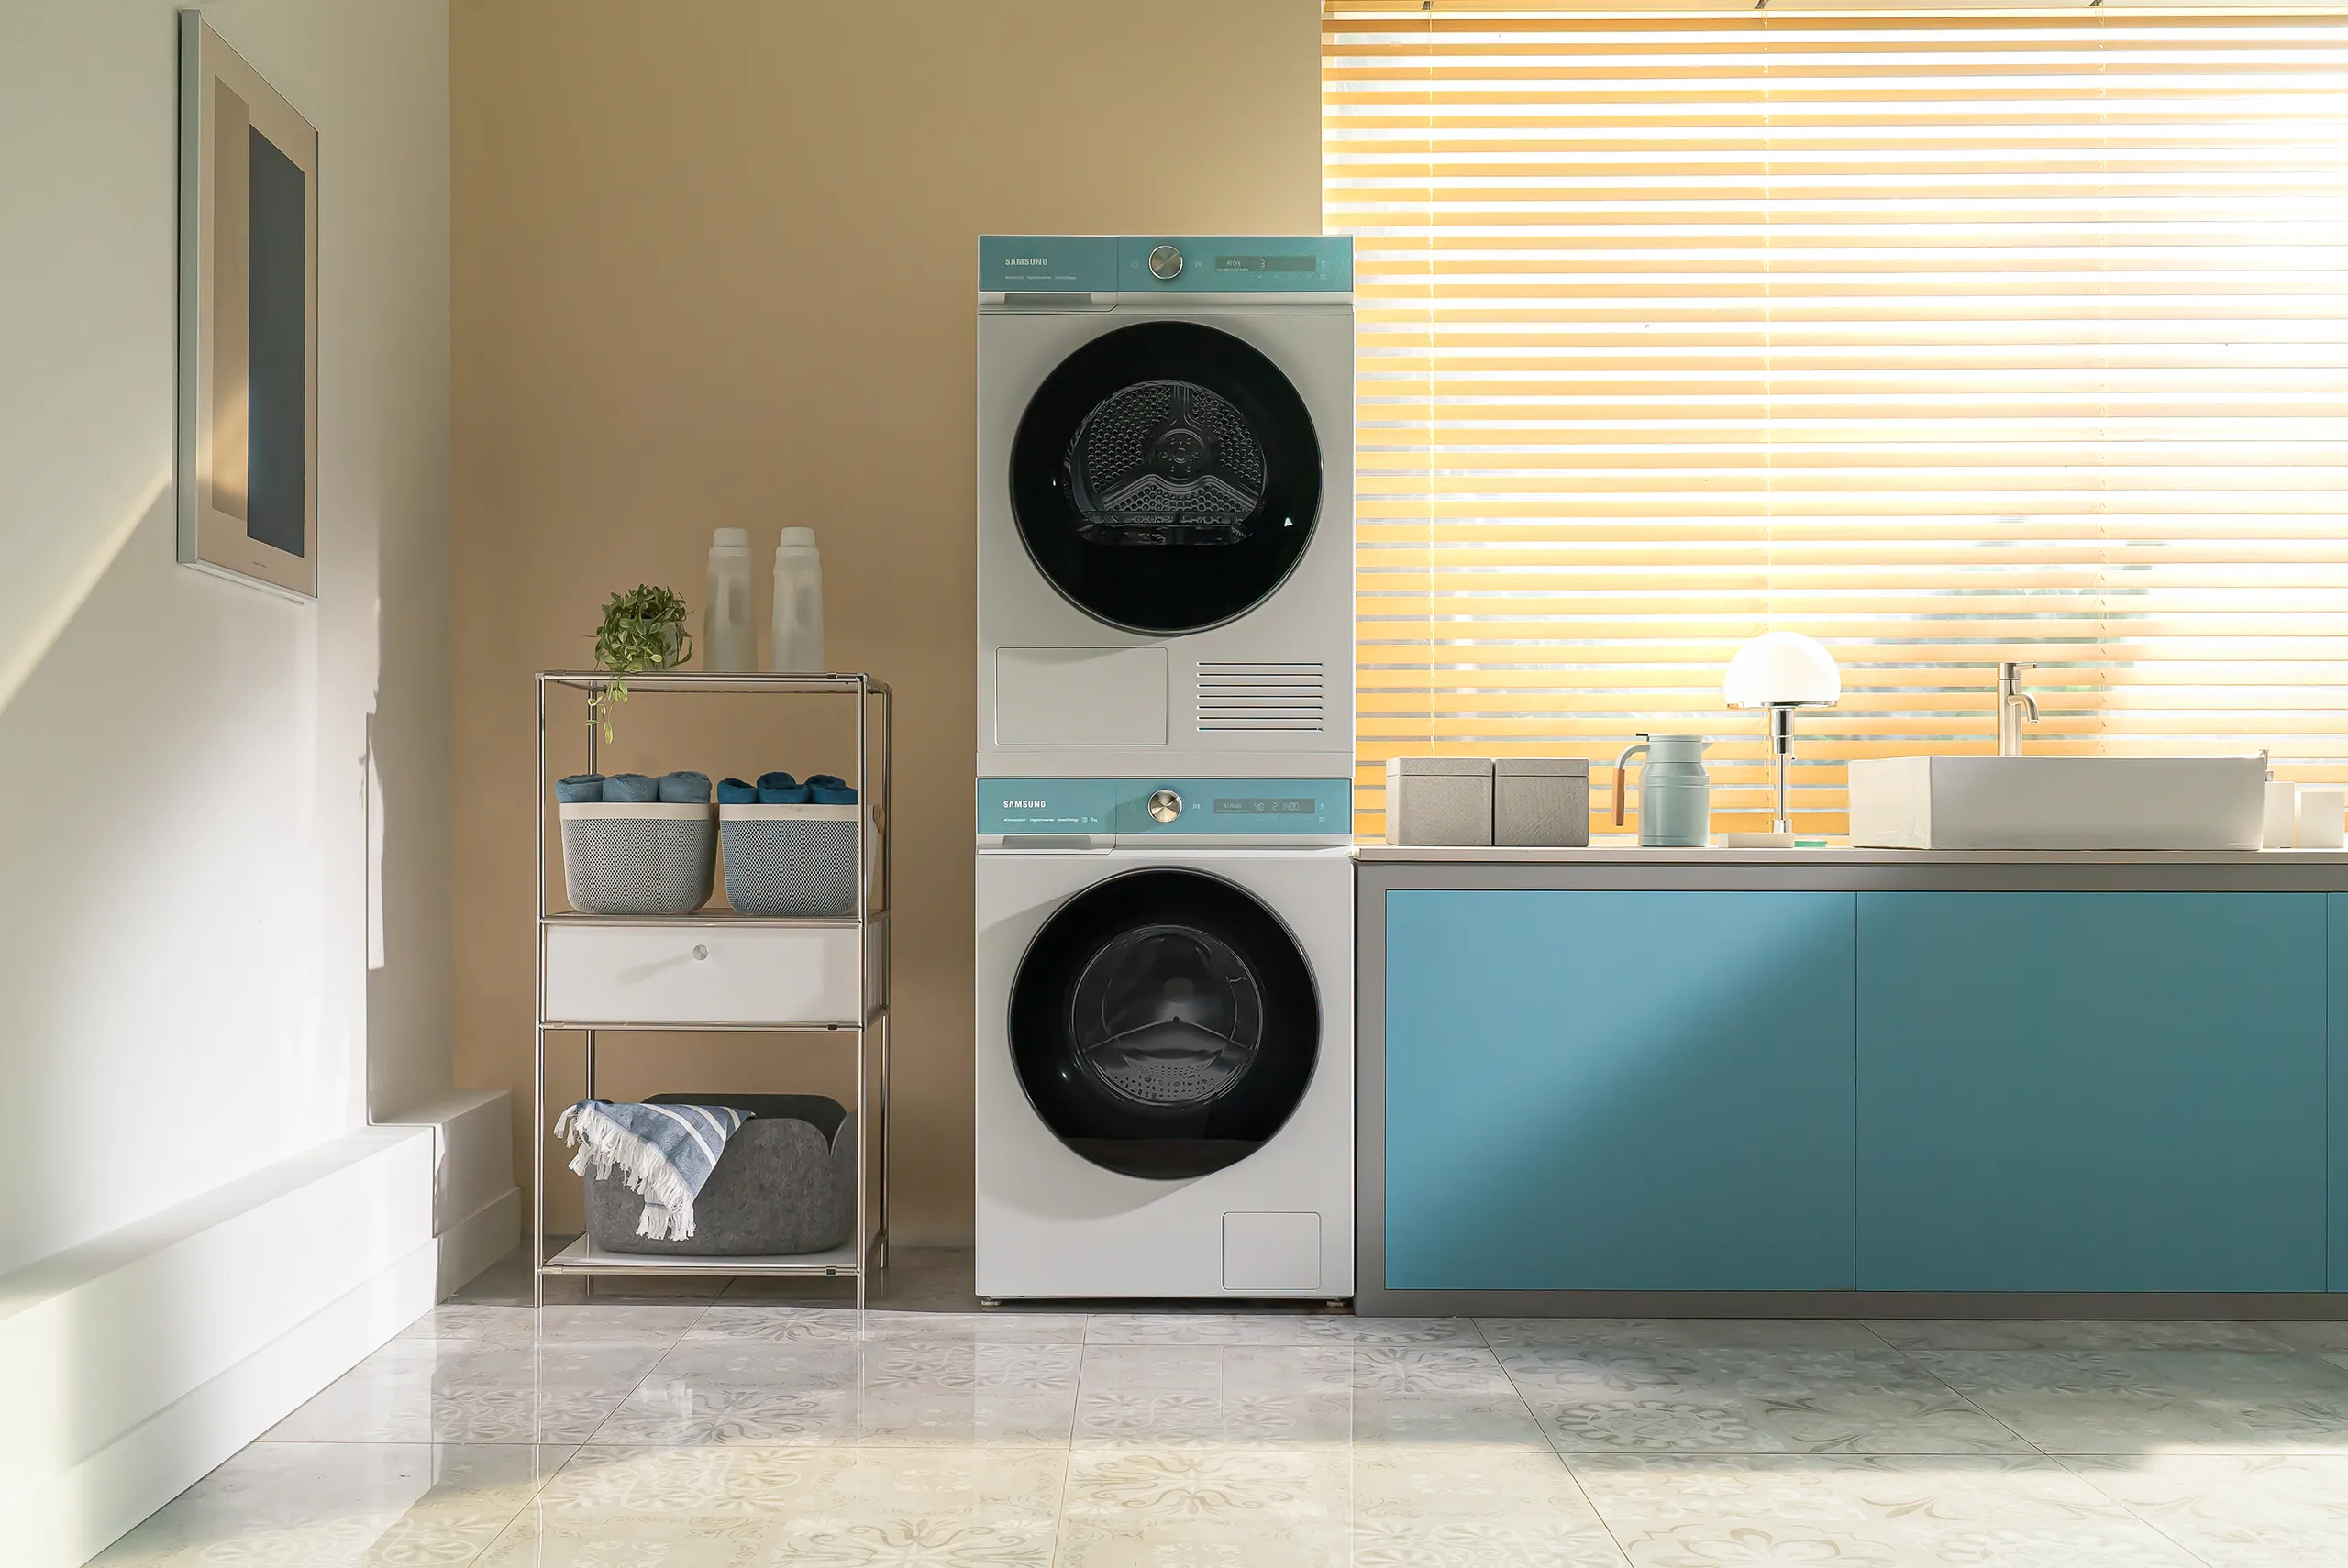 Samsung khai mở nhiều lợi ích bất ngờ với các công nghệ trên máy giặt